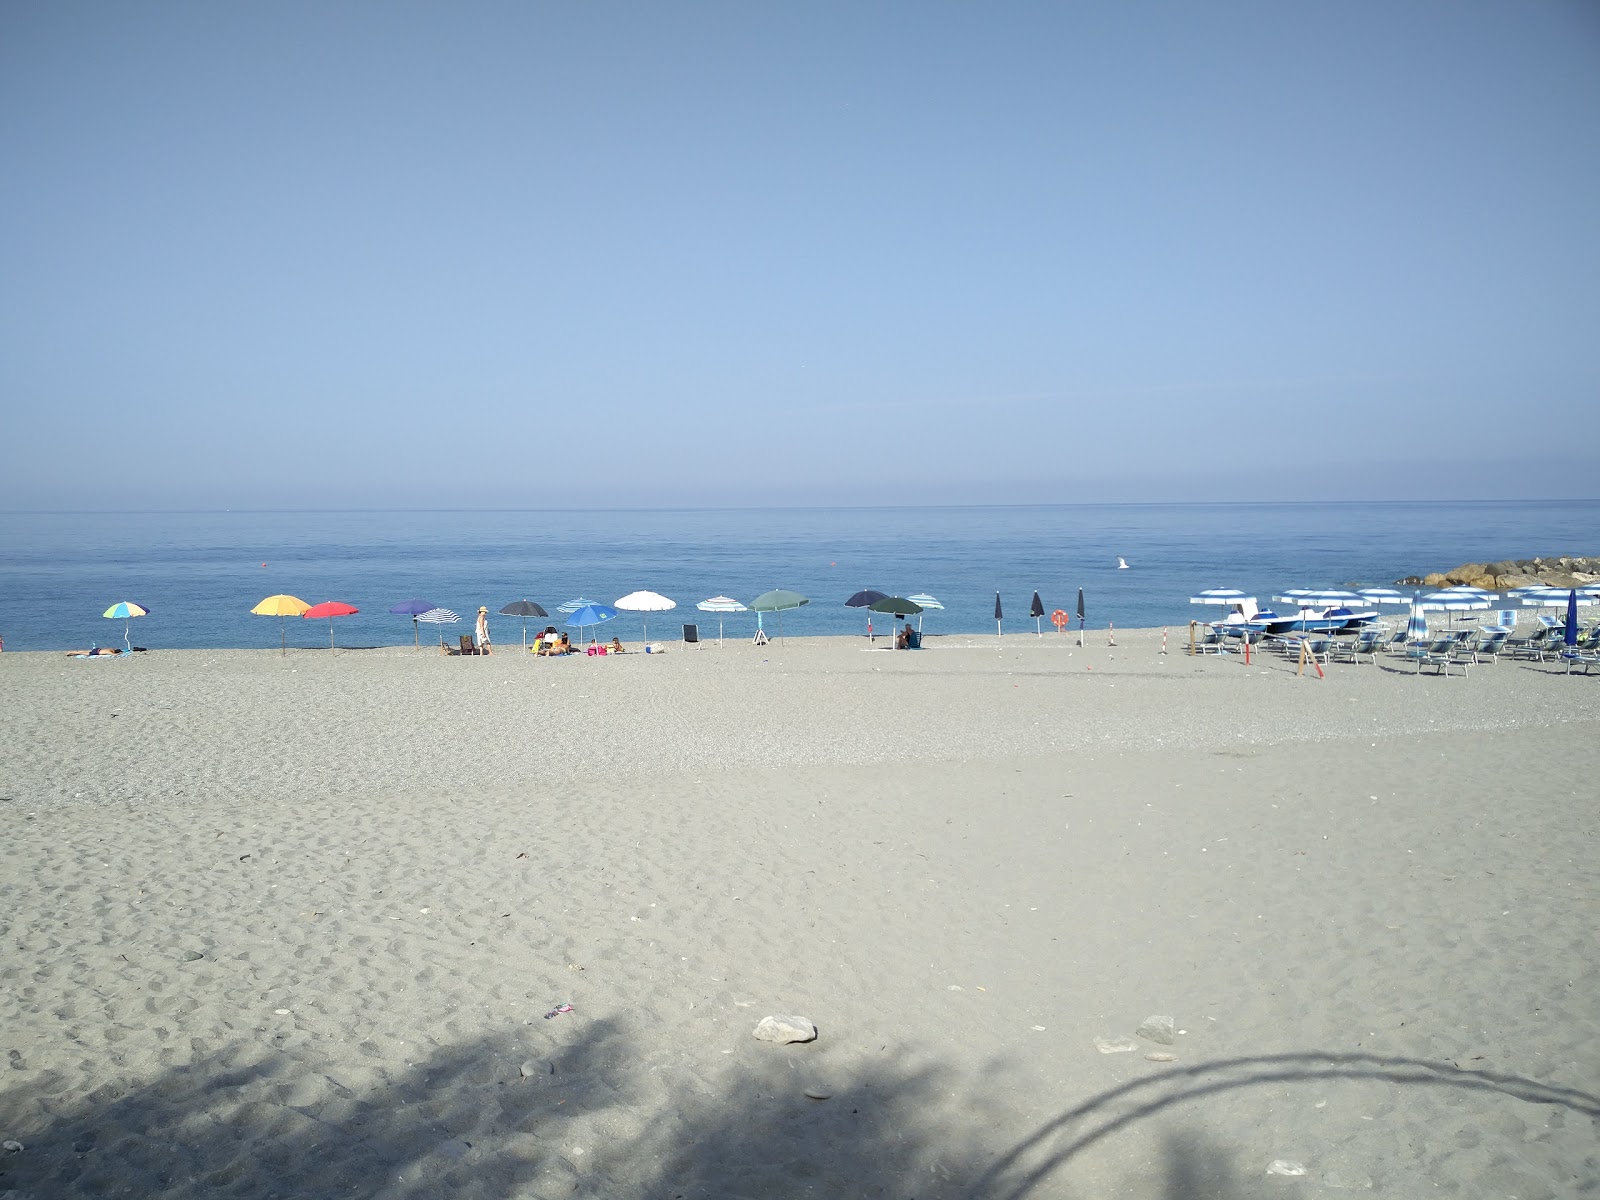 Spiaggia Amantea'in fotoğrafı - rahatlamayı sevenler arasında popüler bir yer